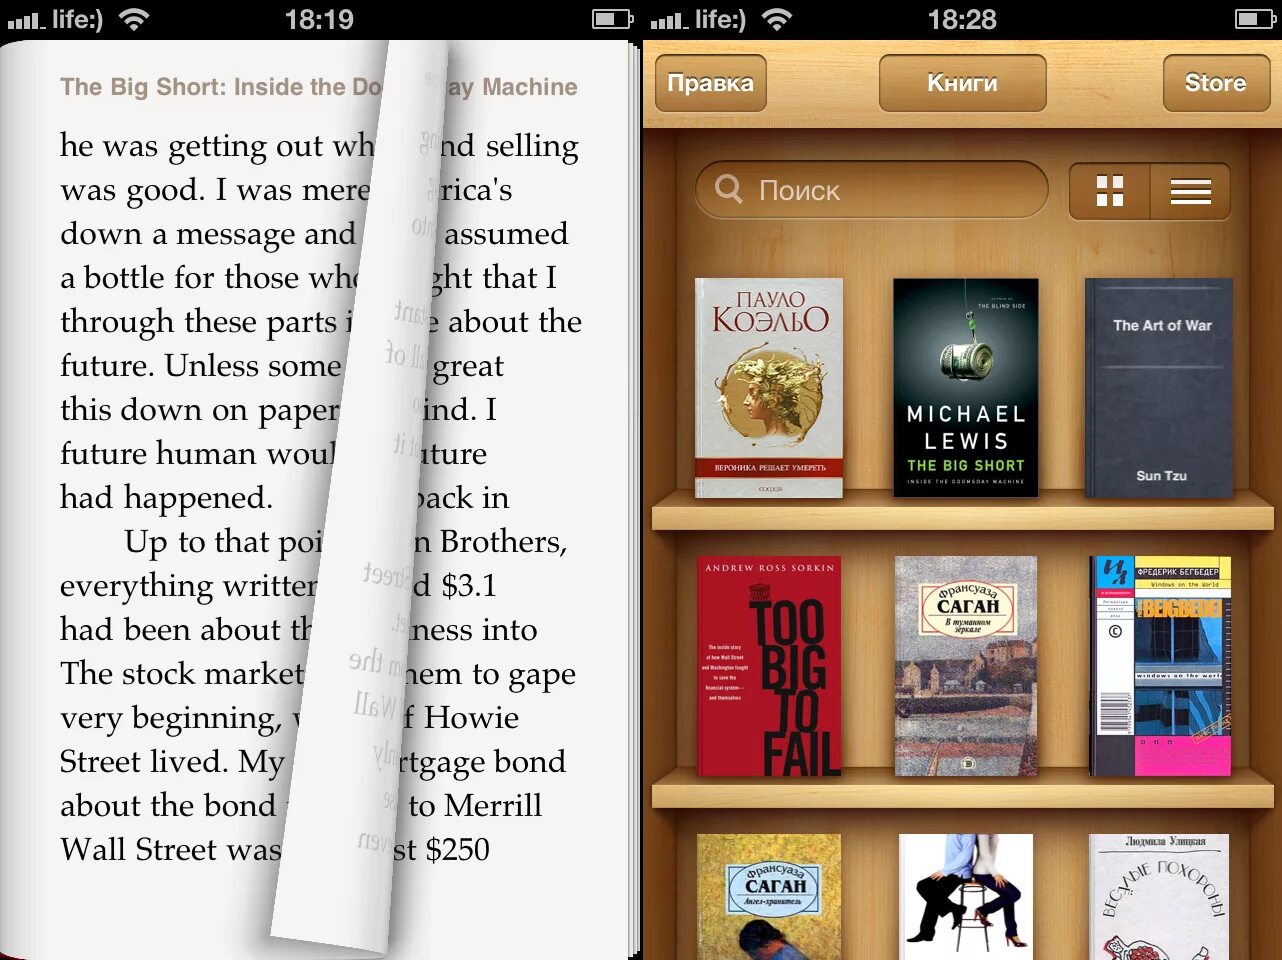 Программа интерактивная библиотека. Приложение для чтения книг. Читалка для электронных книг. Удобное приложение для чтения книг. Читалка для электронных книг приложение.